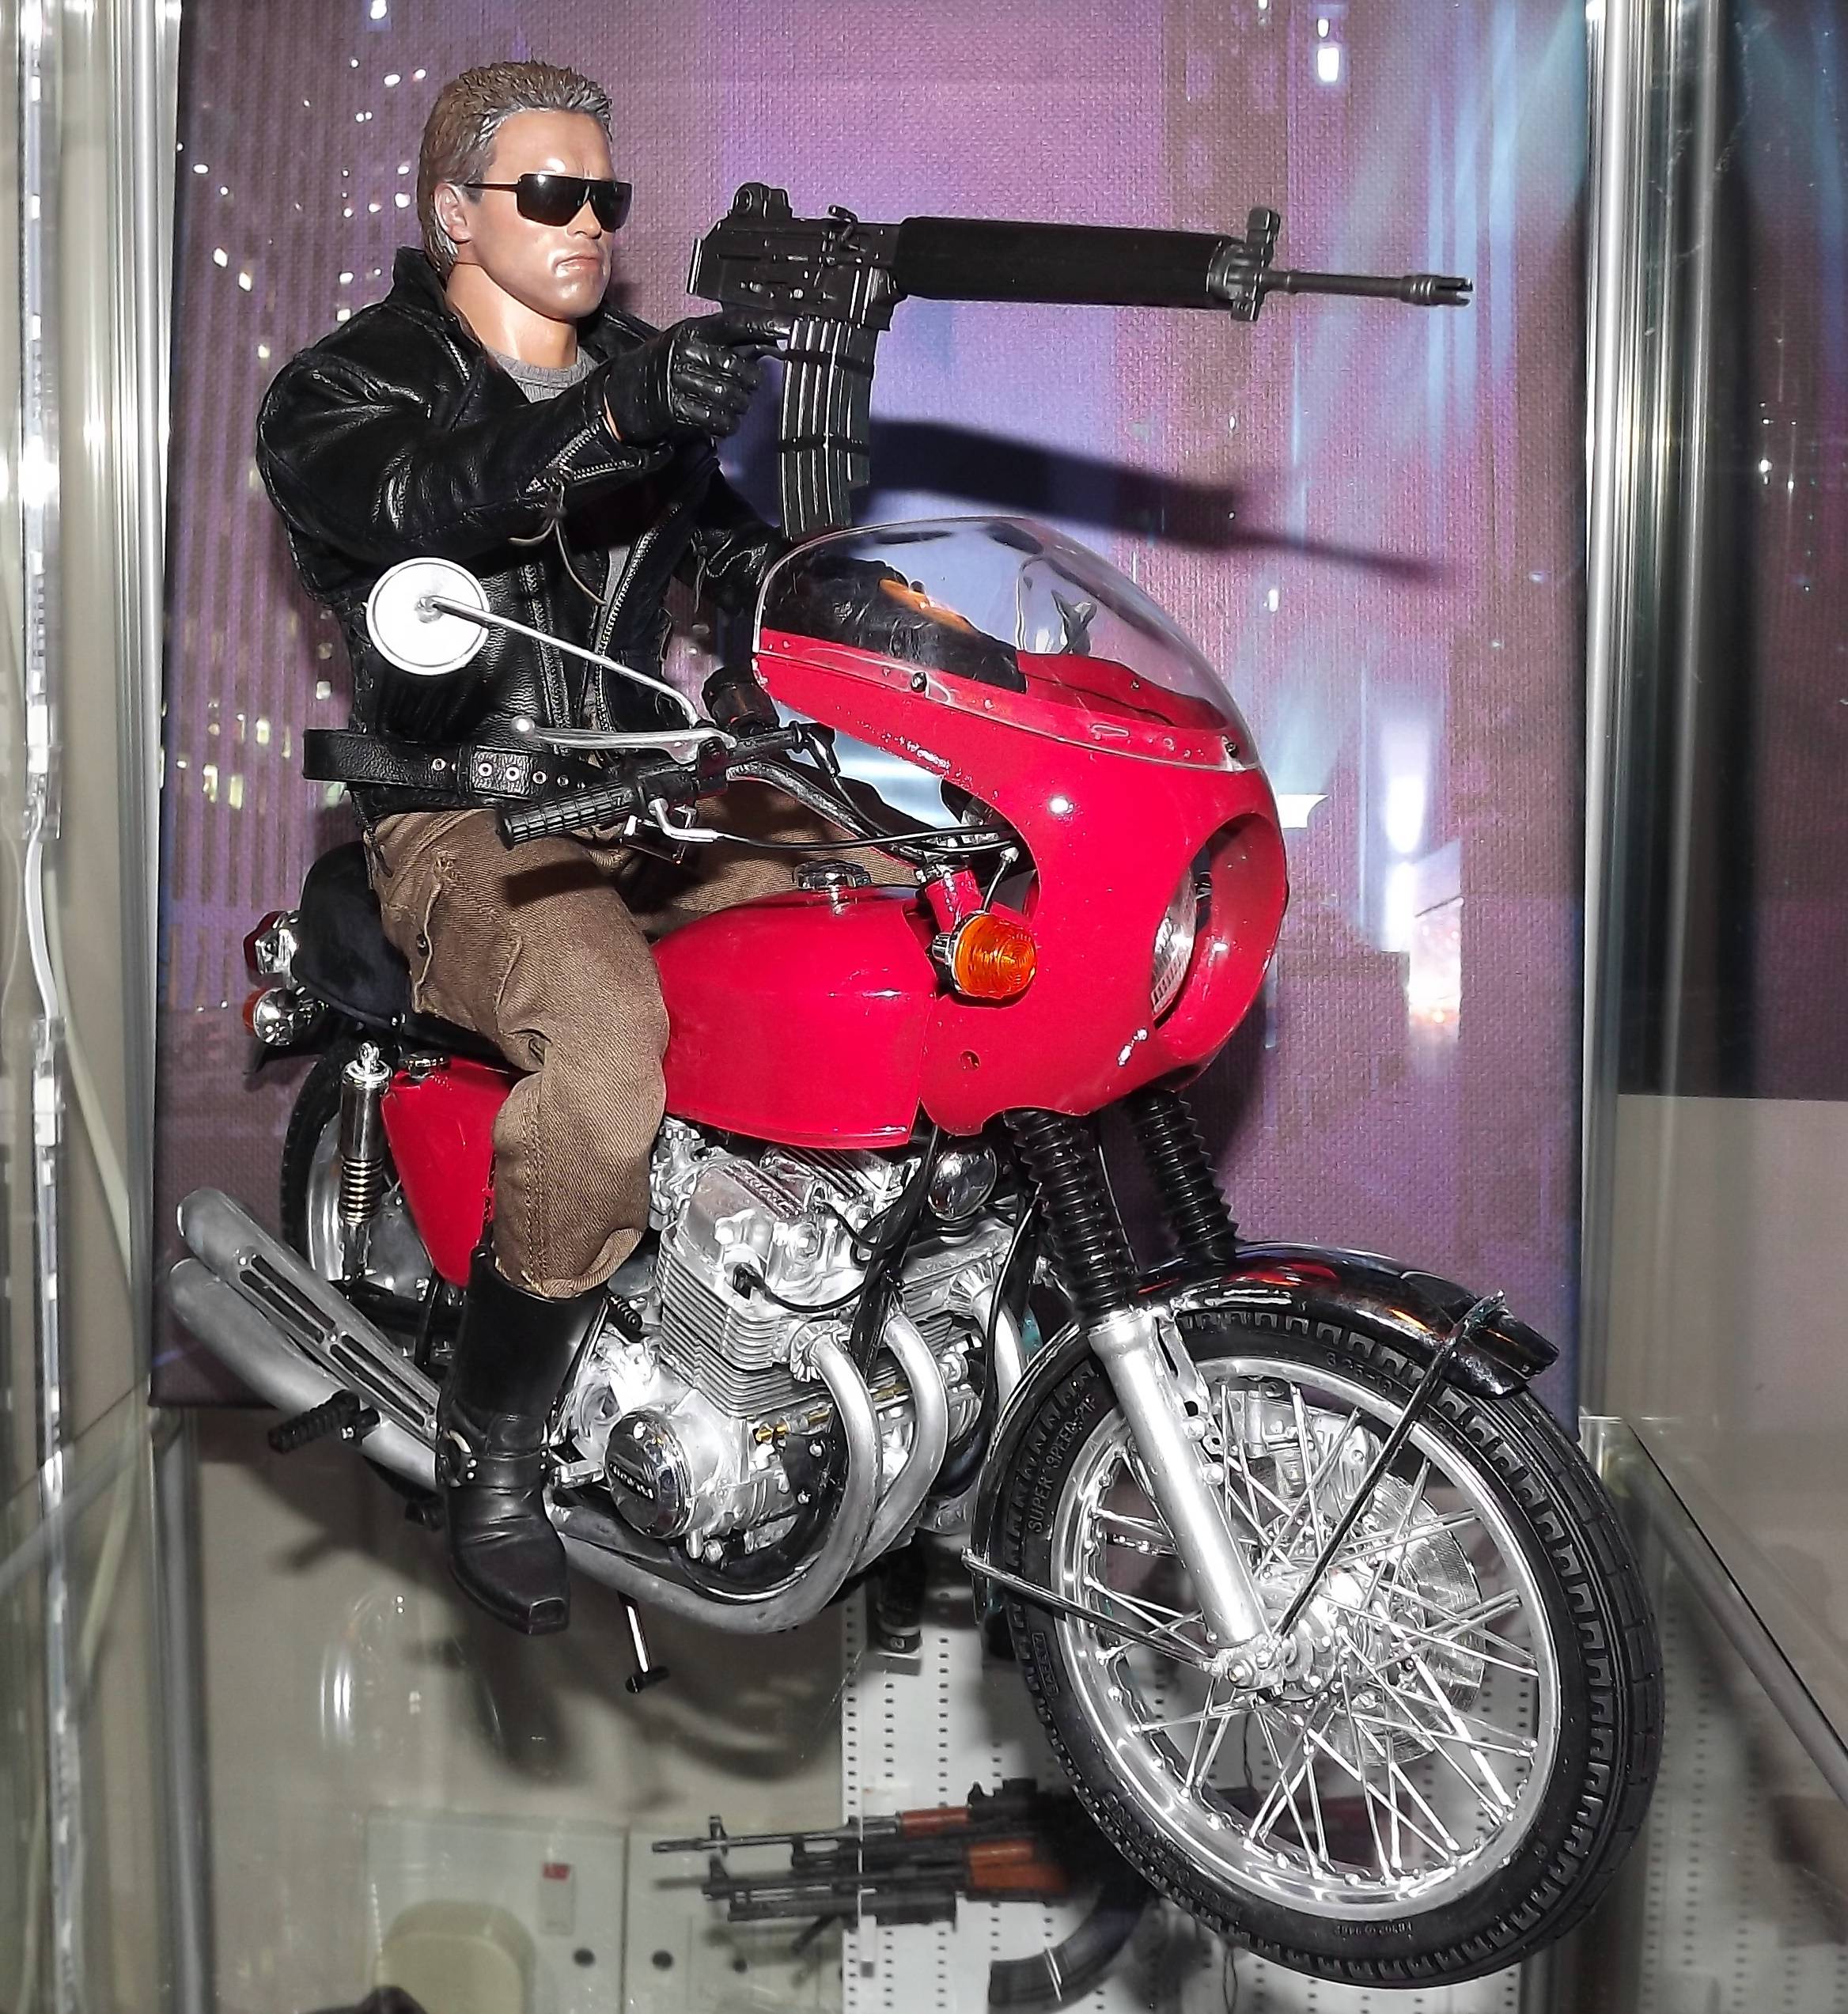 Honda CB750 Four modelo de brinquedo do primeiro filme Terminator